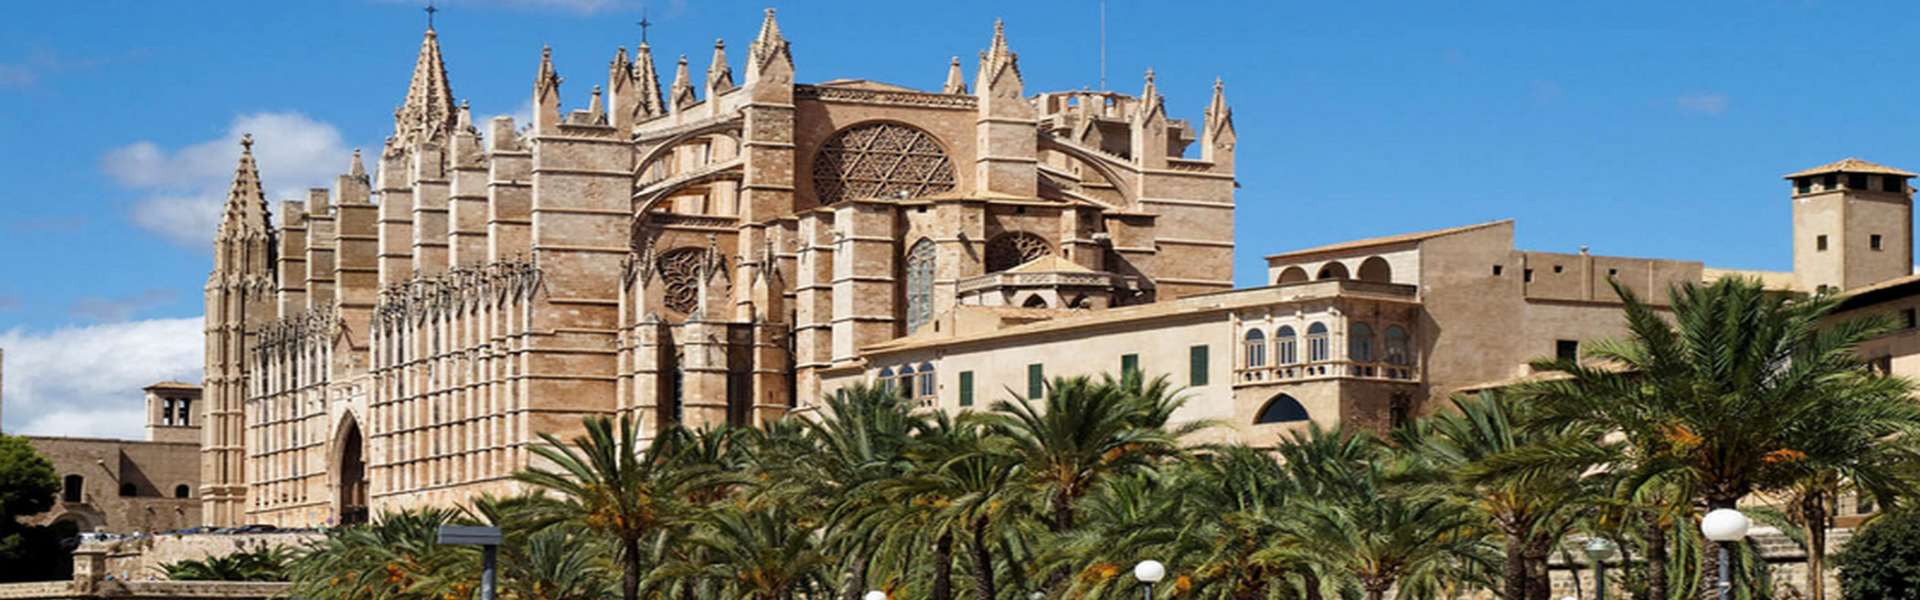 Palma/Centro - Exclusivo apartamento de diseño cerca de la catedral